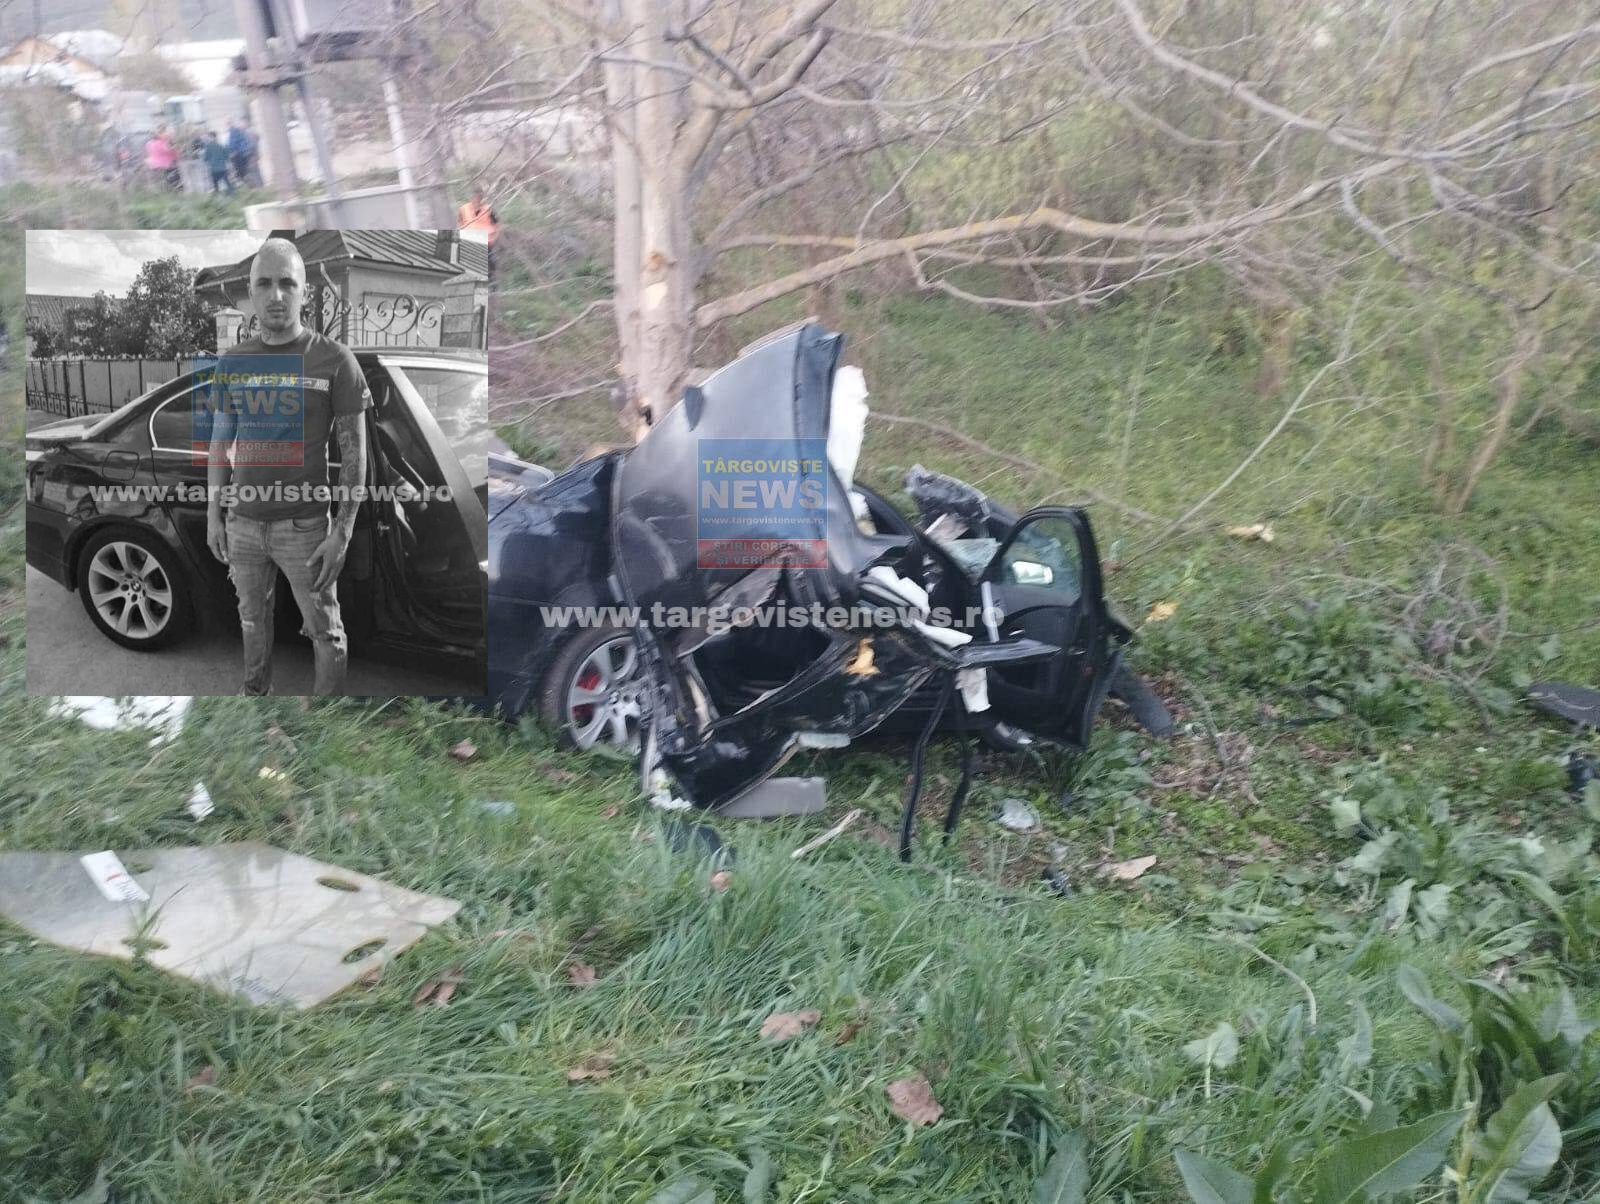 Veşti tragice: A murit şoferul din accidentul de la Bucşani. George avea numai 26 de ani: “Drum lin către îngeri. Mult prea devreme”